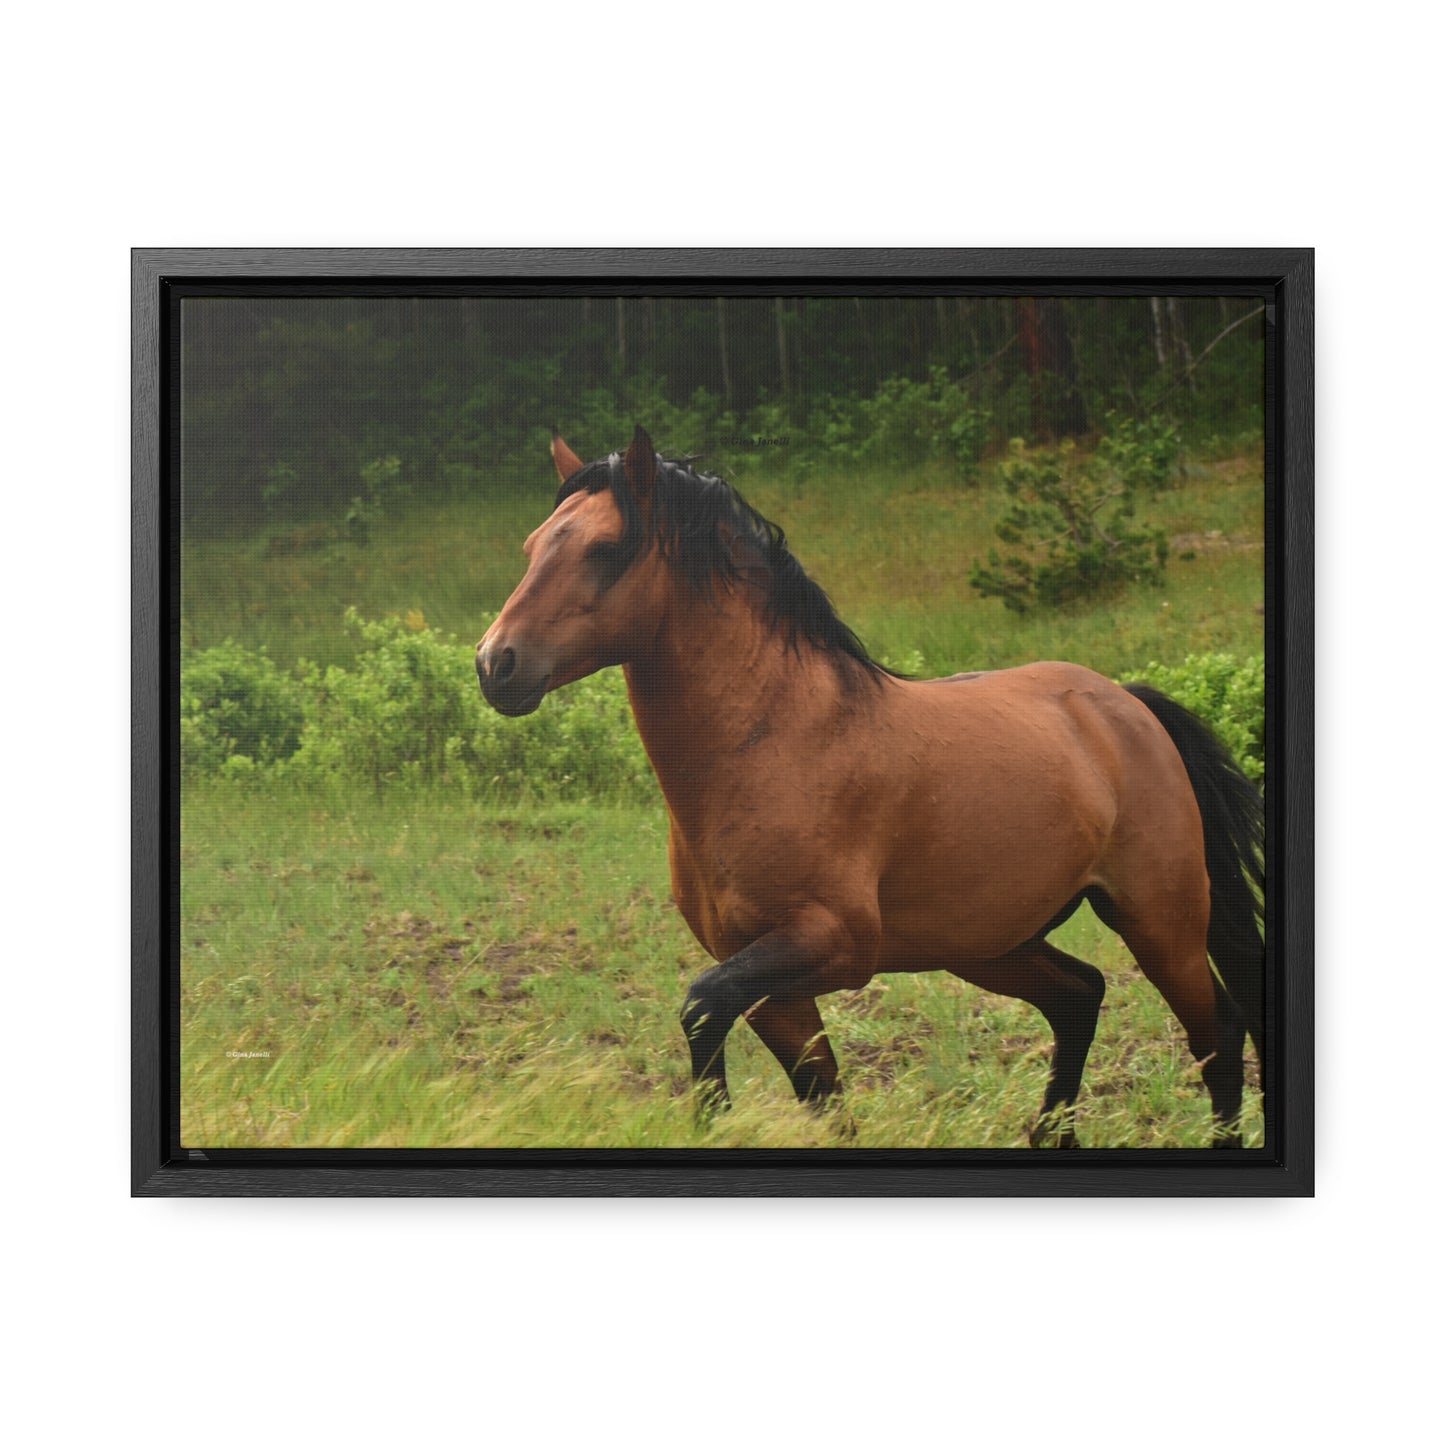 Protector,  Wild Stallion   Gallery Canvas Wraps, Horizontal Frame